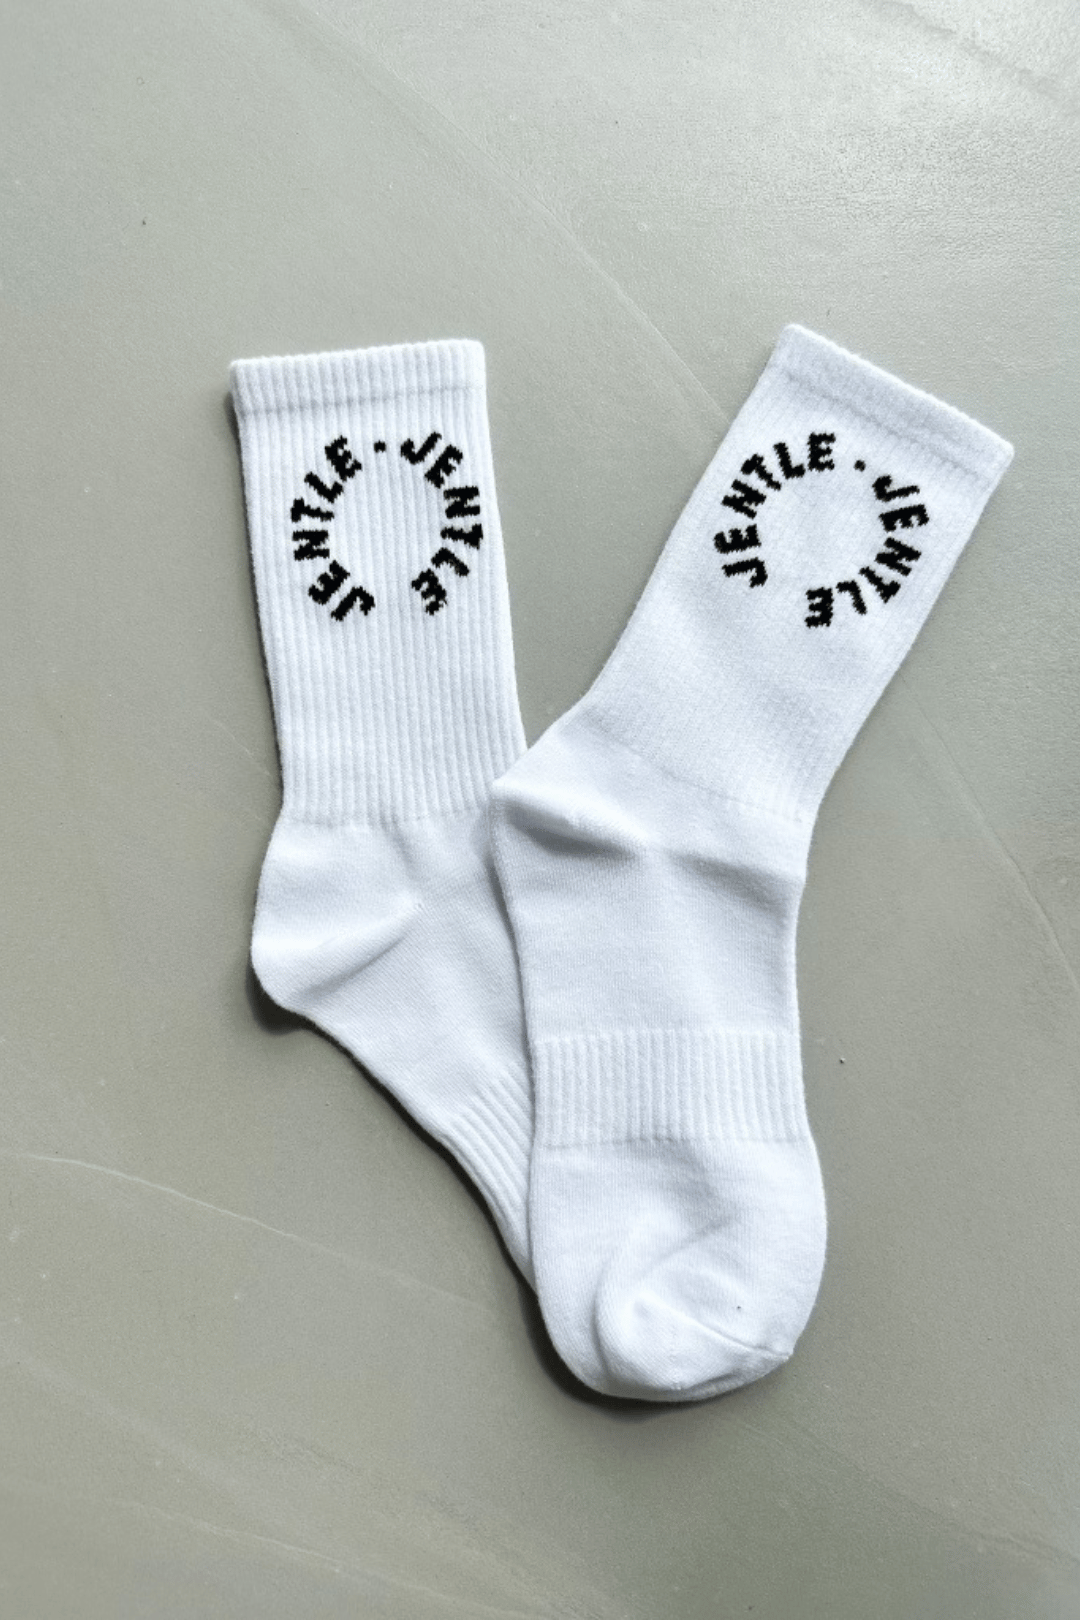 Jentle - Training Ace Socks (White)